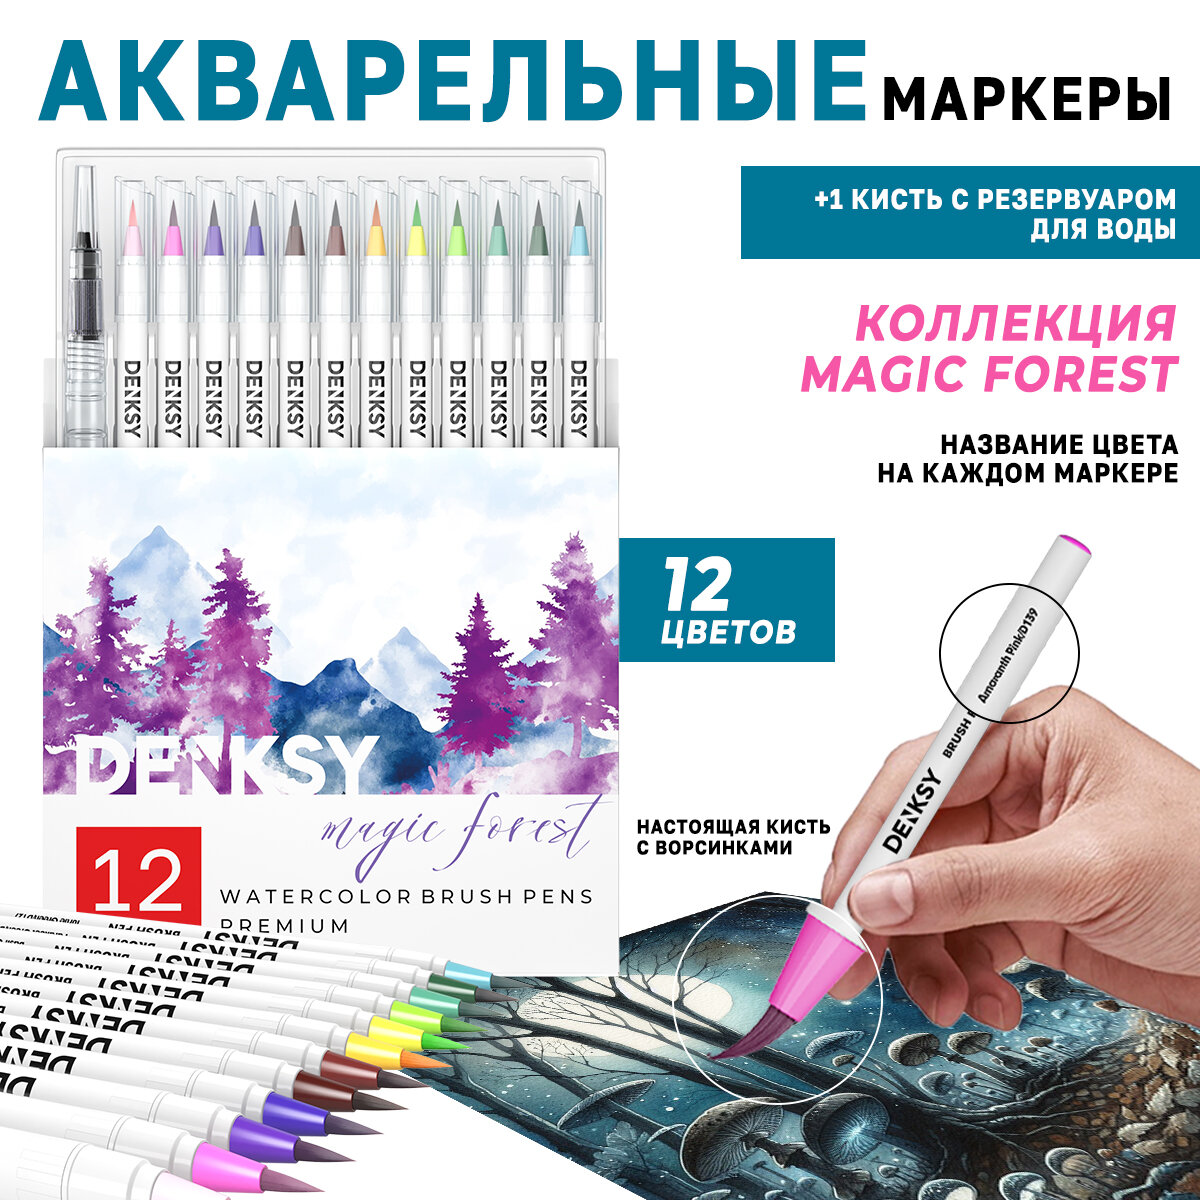 Акварельные маркеры DENKSY 12 Magic Forest цветов в белом корпусе и 1 кисть с резервуаром